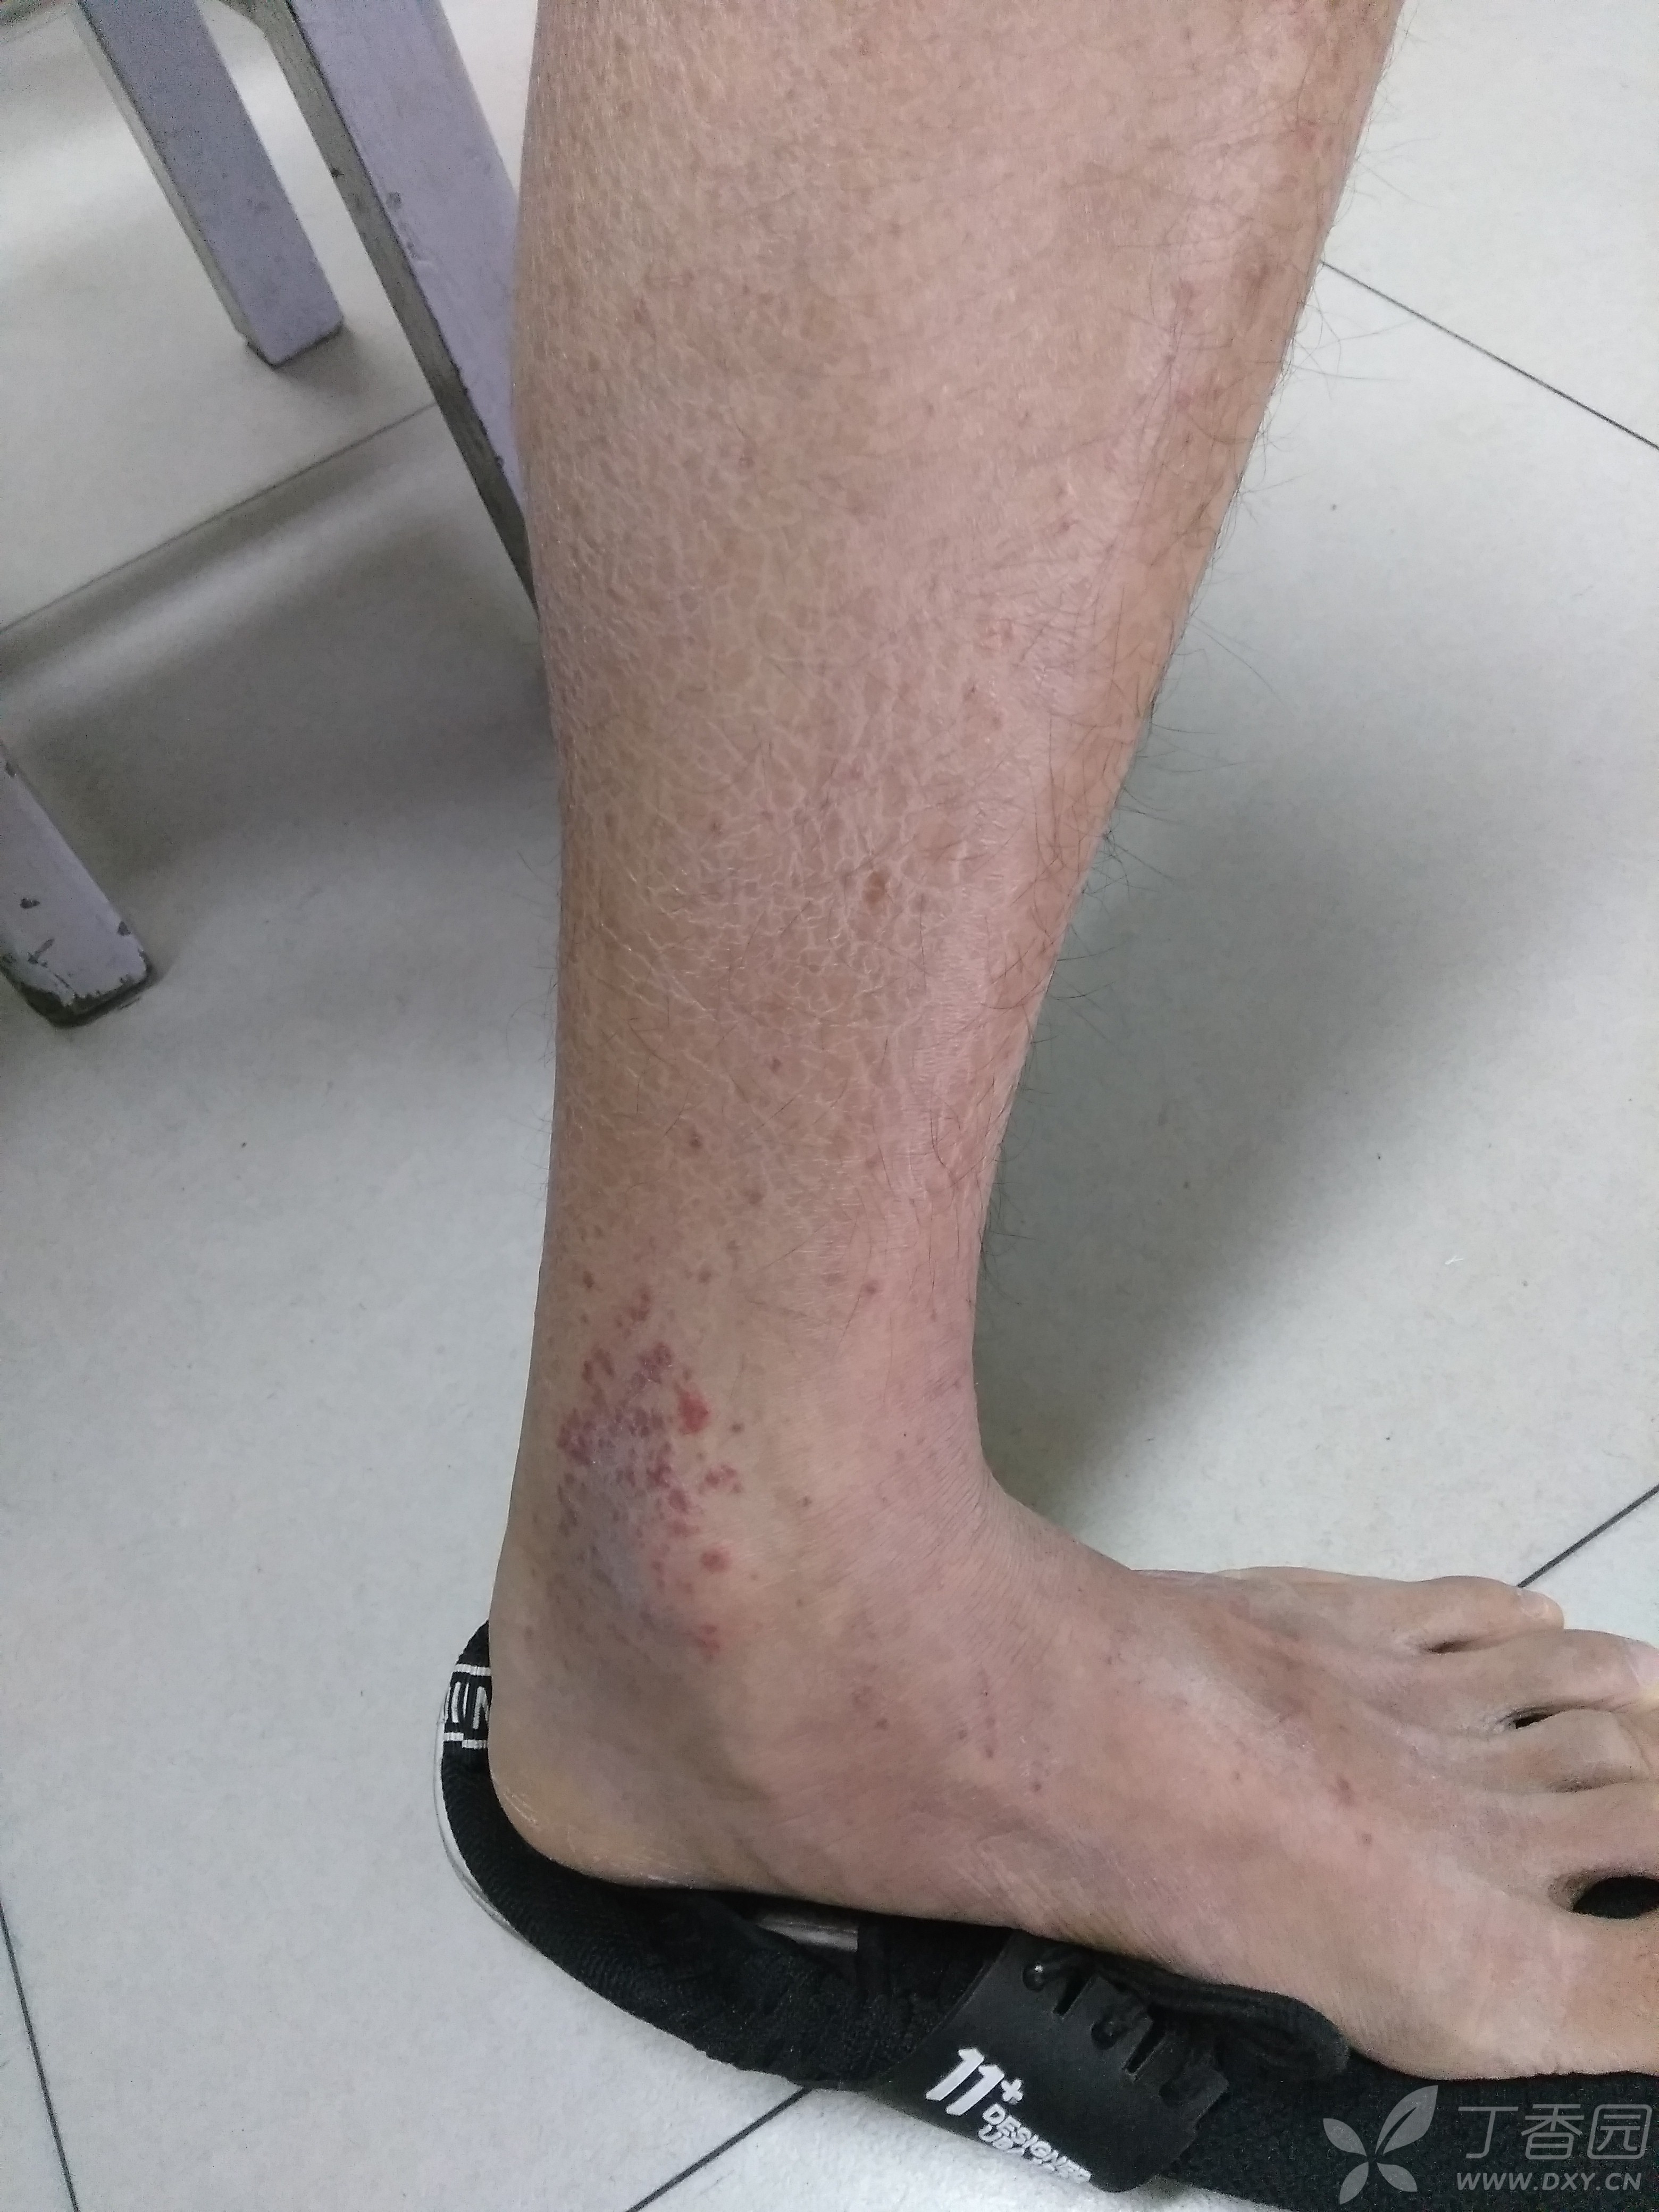 男,17岁,左小腿,足部皮肤红斑,痒,疼痛求诊断及治疗